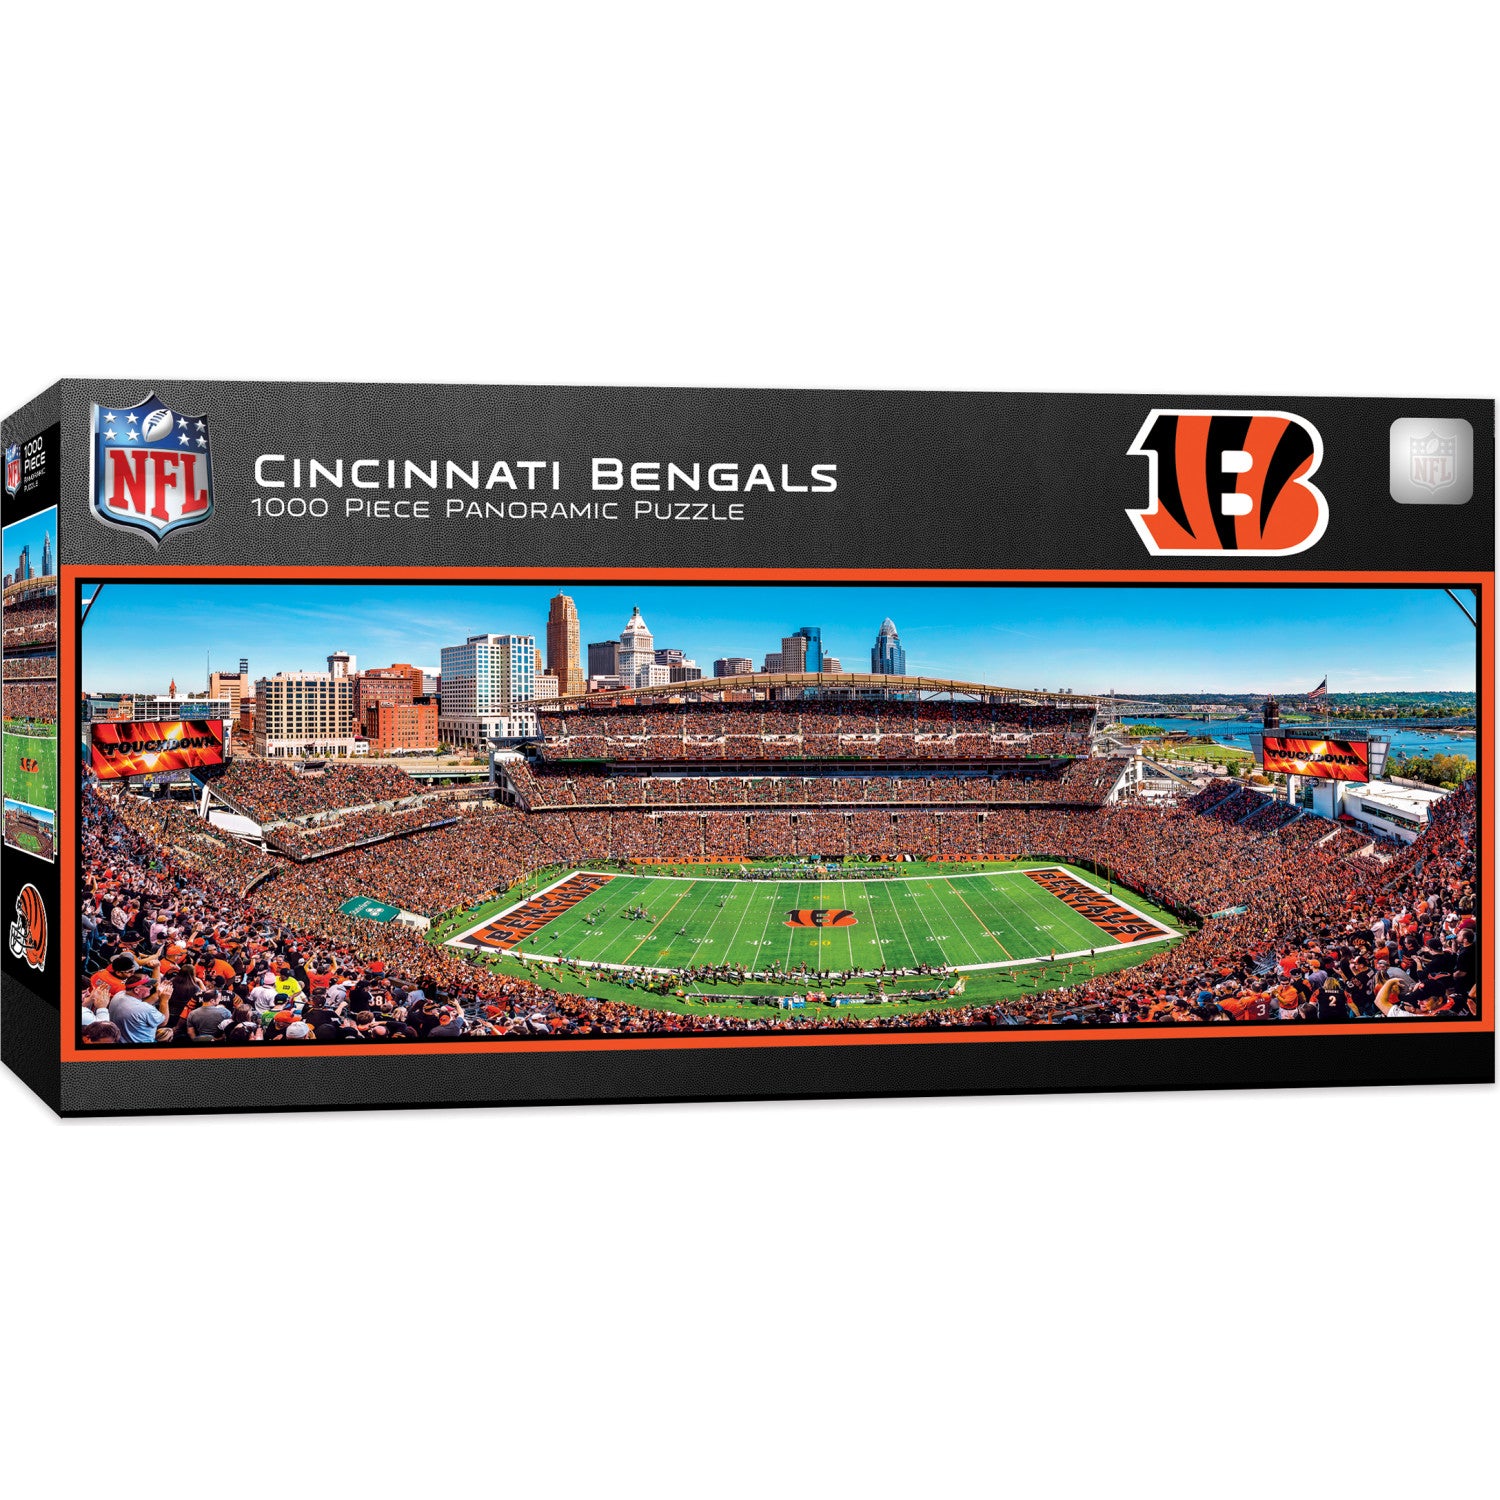 Cincinnati Bengals - 1000 Piece Panoramic Puzzle